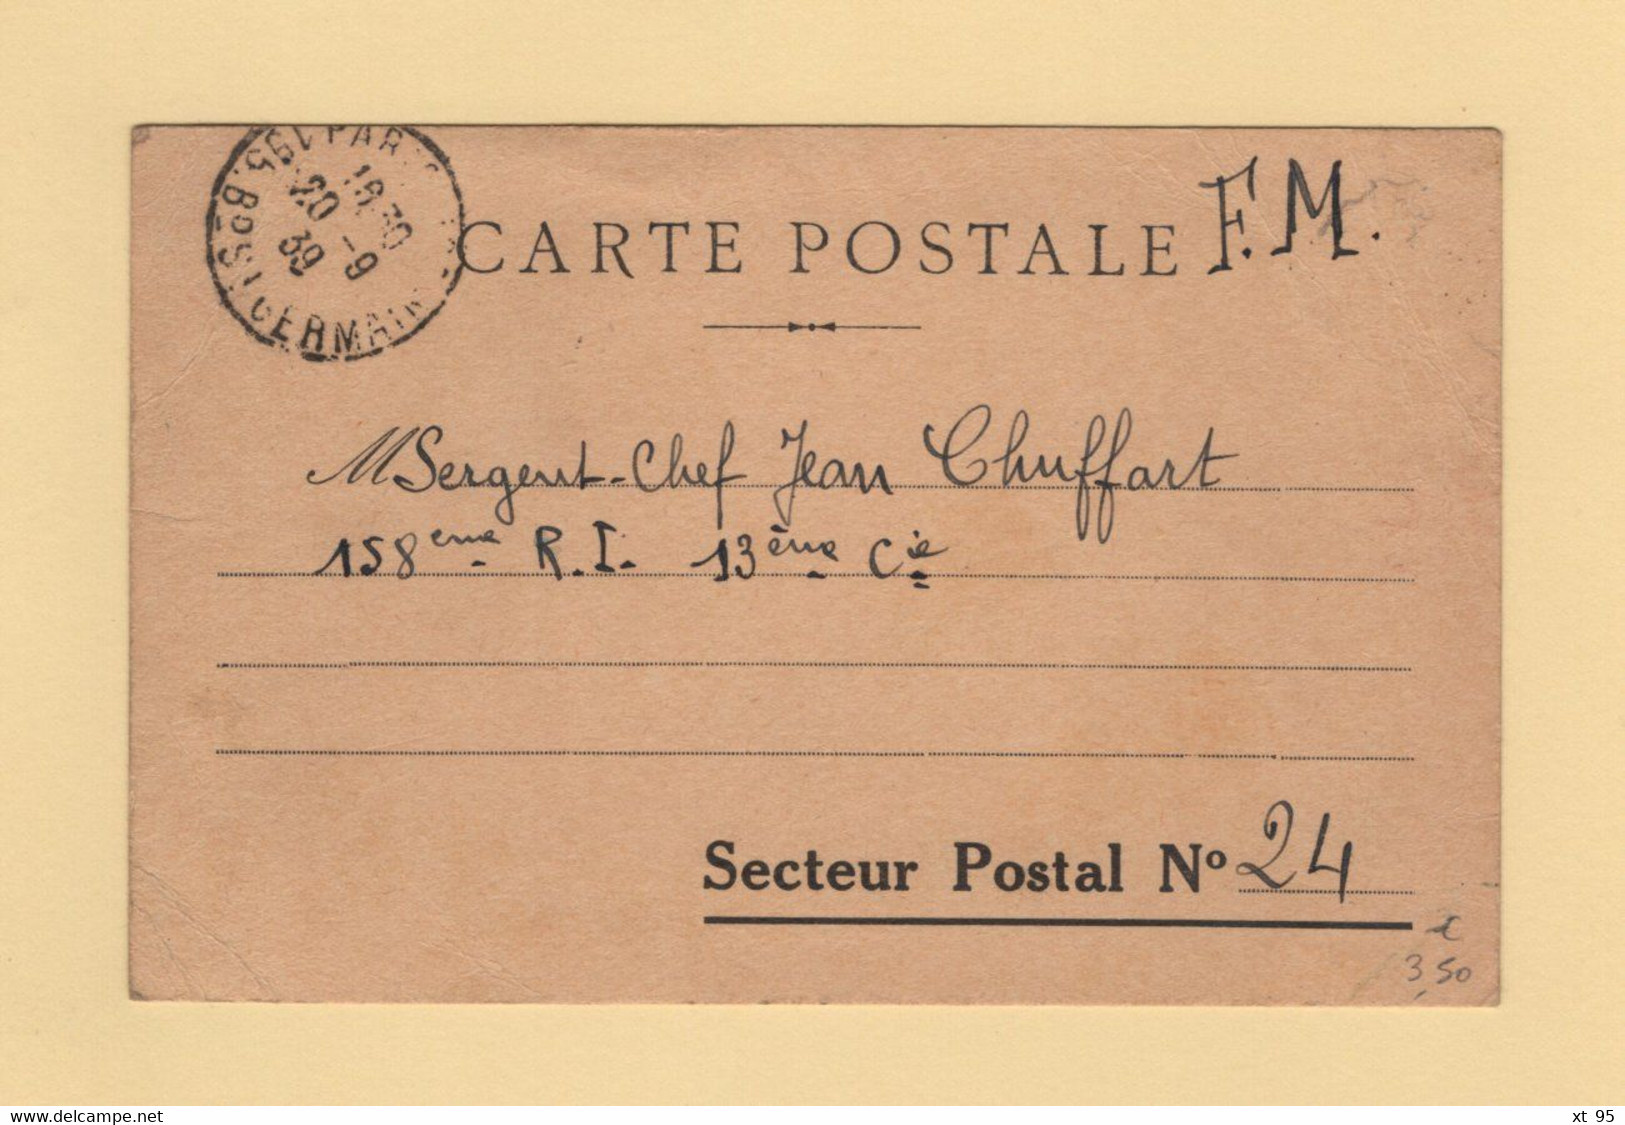 Carte Postale En FM Pour Le Secteur N°24 - Paris - 1939 - 2. Weltkrieg 1939-1945